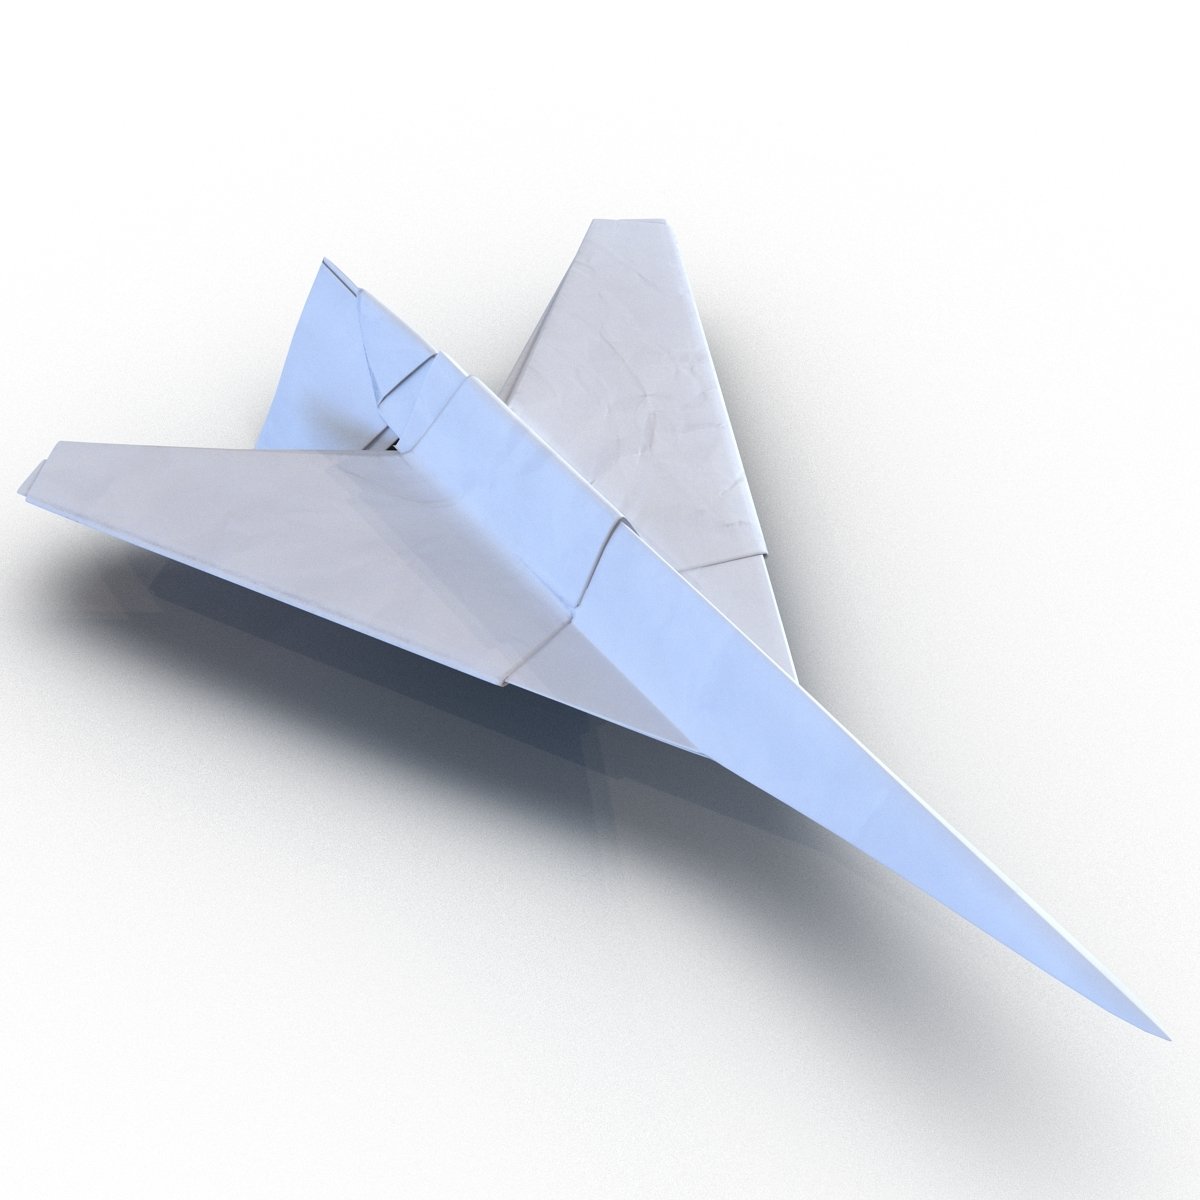 Легкий летающий самолет. Оригами самолет. Модель самолетика из бумаги. Необычный самолет из бумаги. Самолет и хз бумаги.